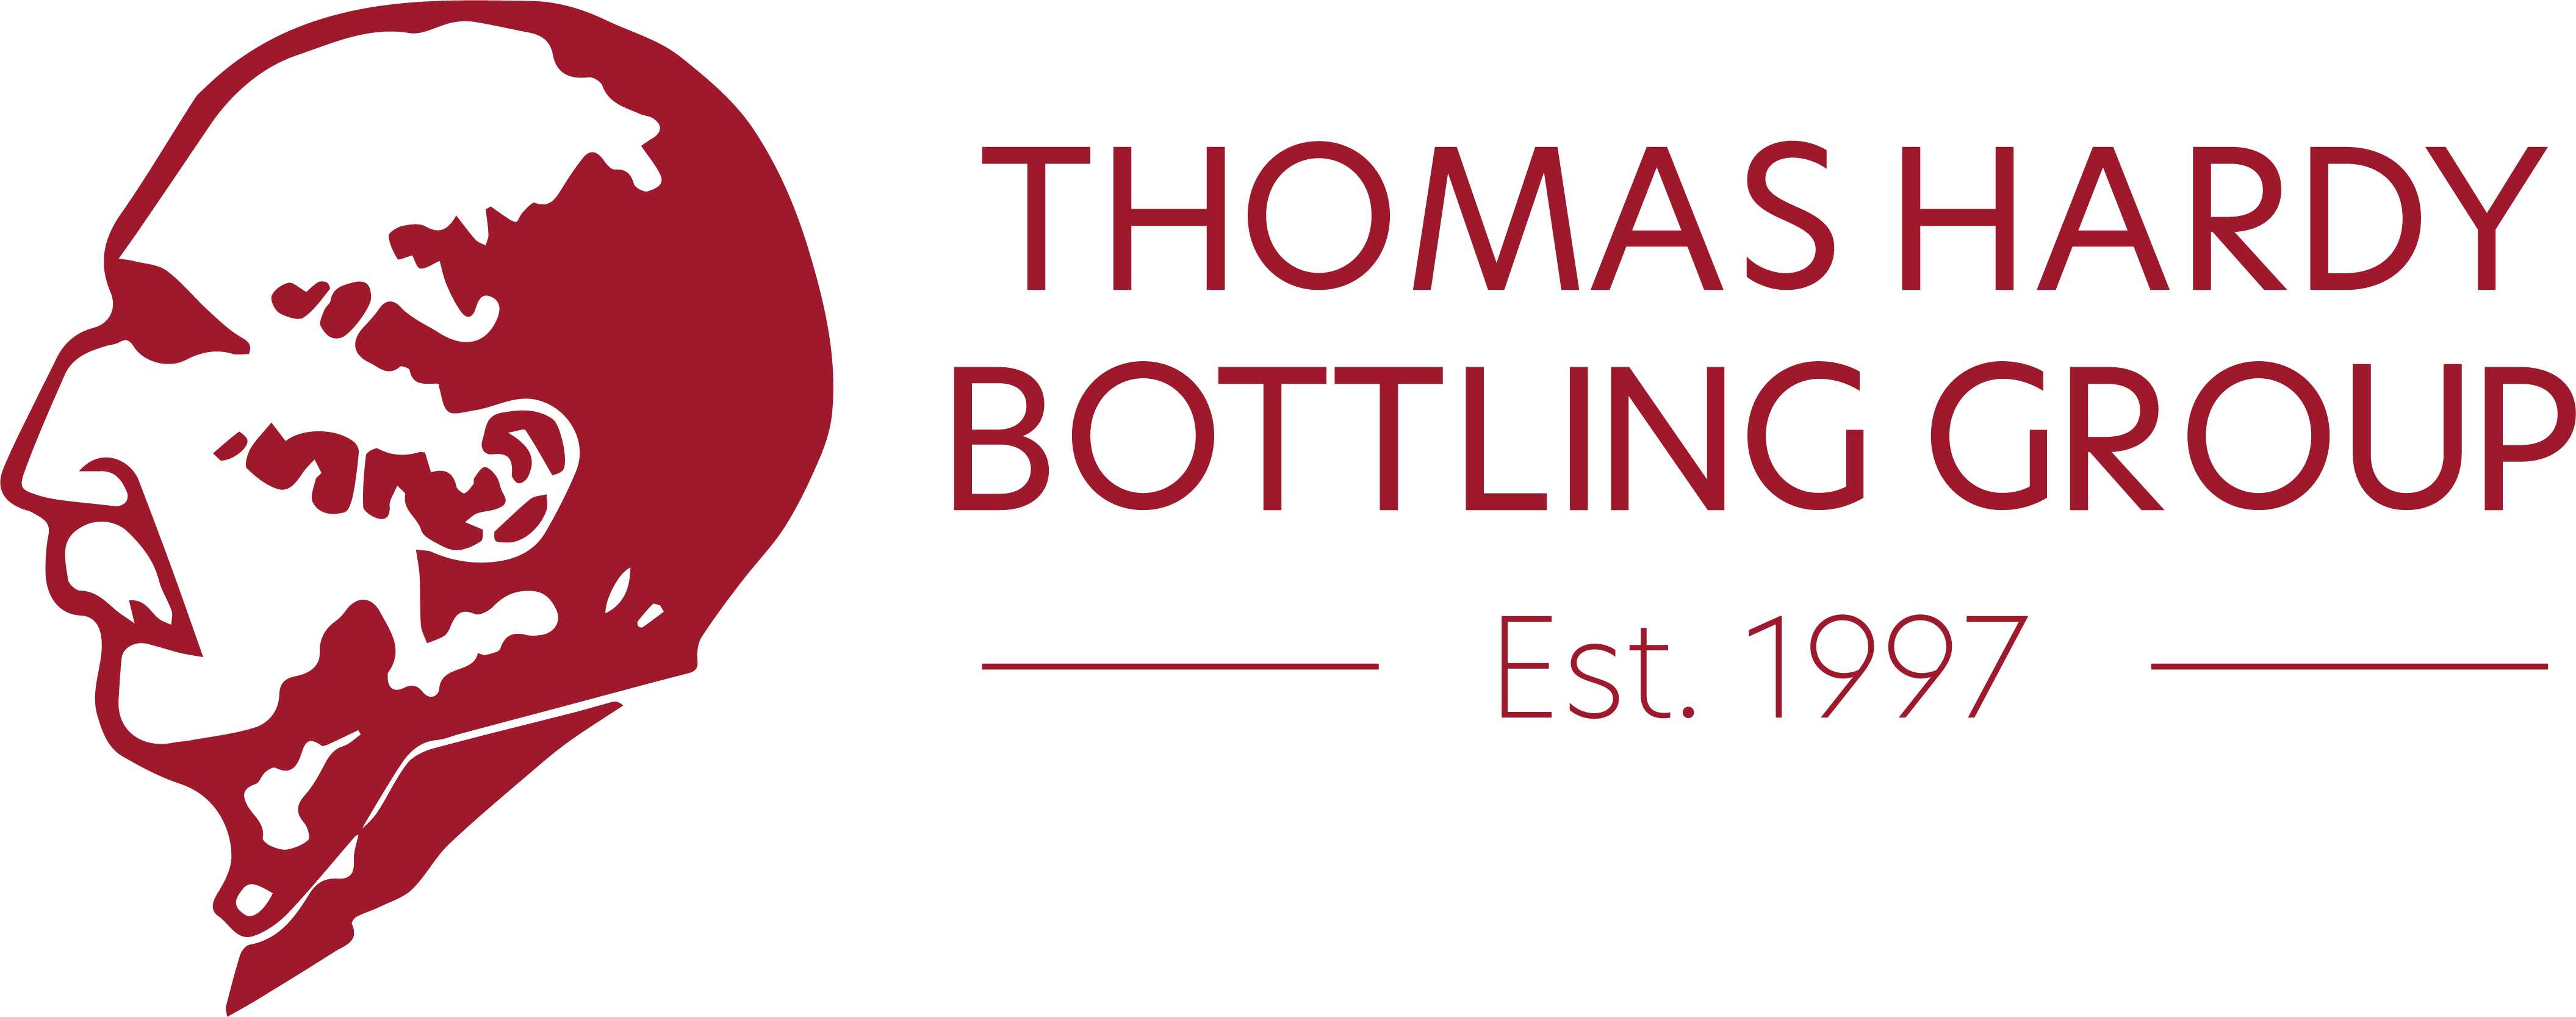 Thomas Hardy Bottling Group